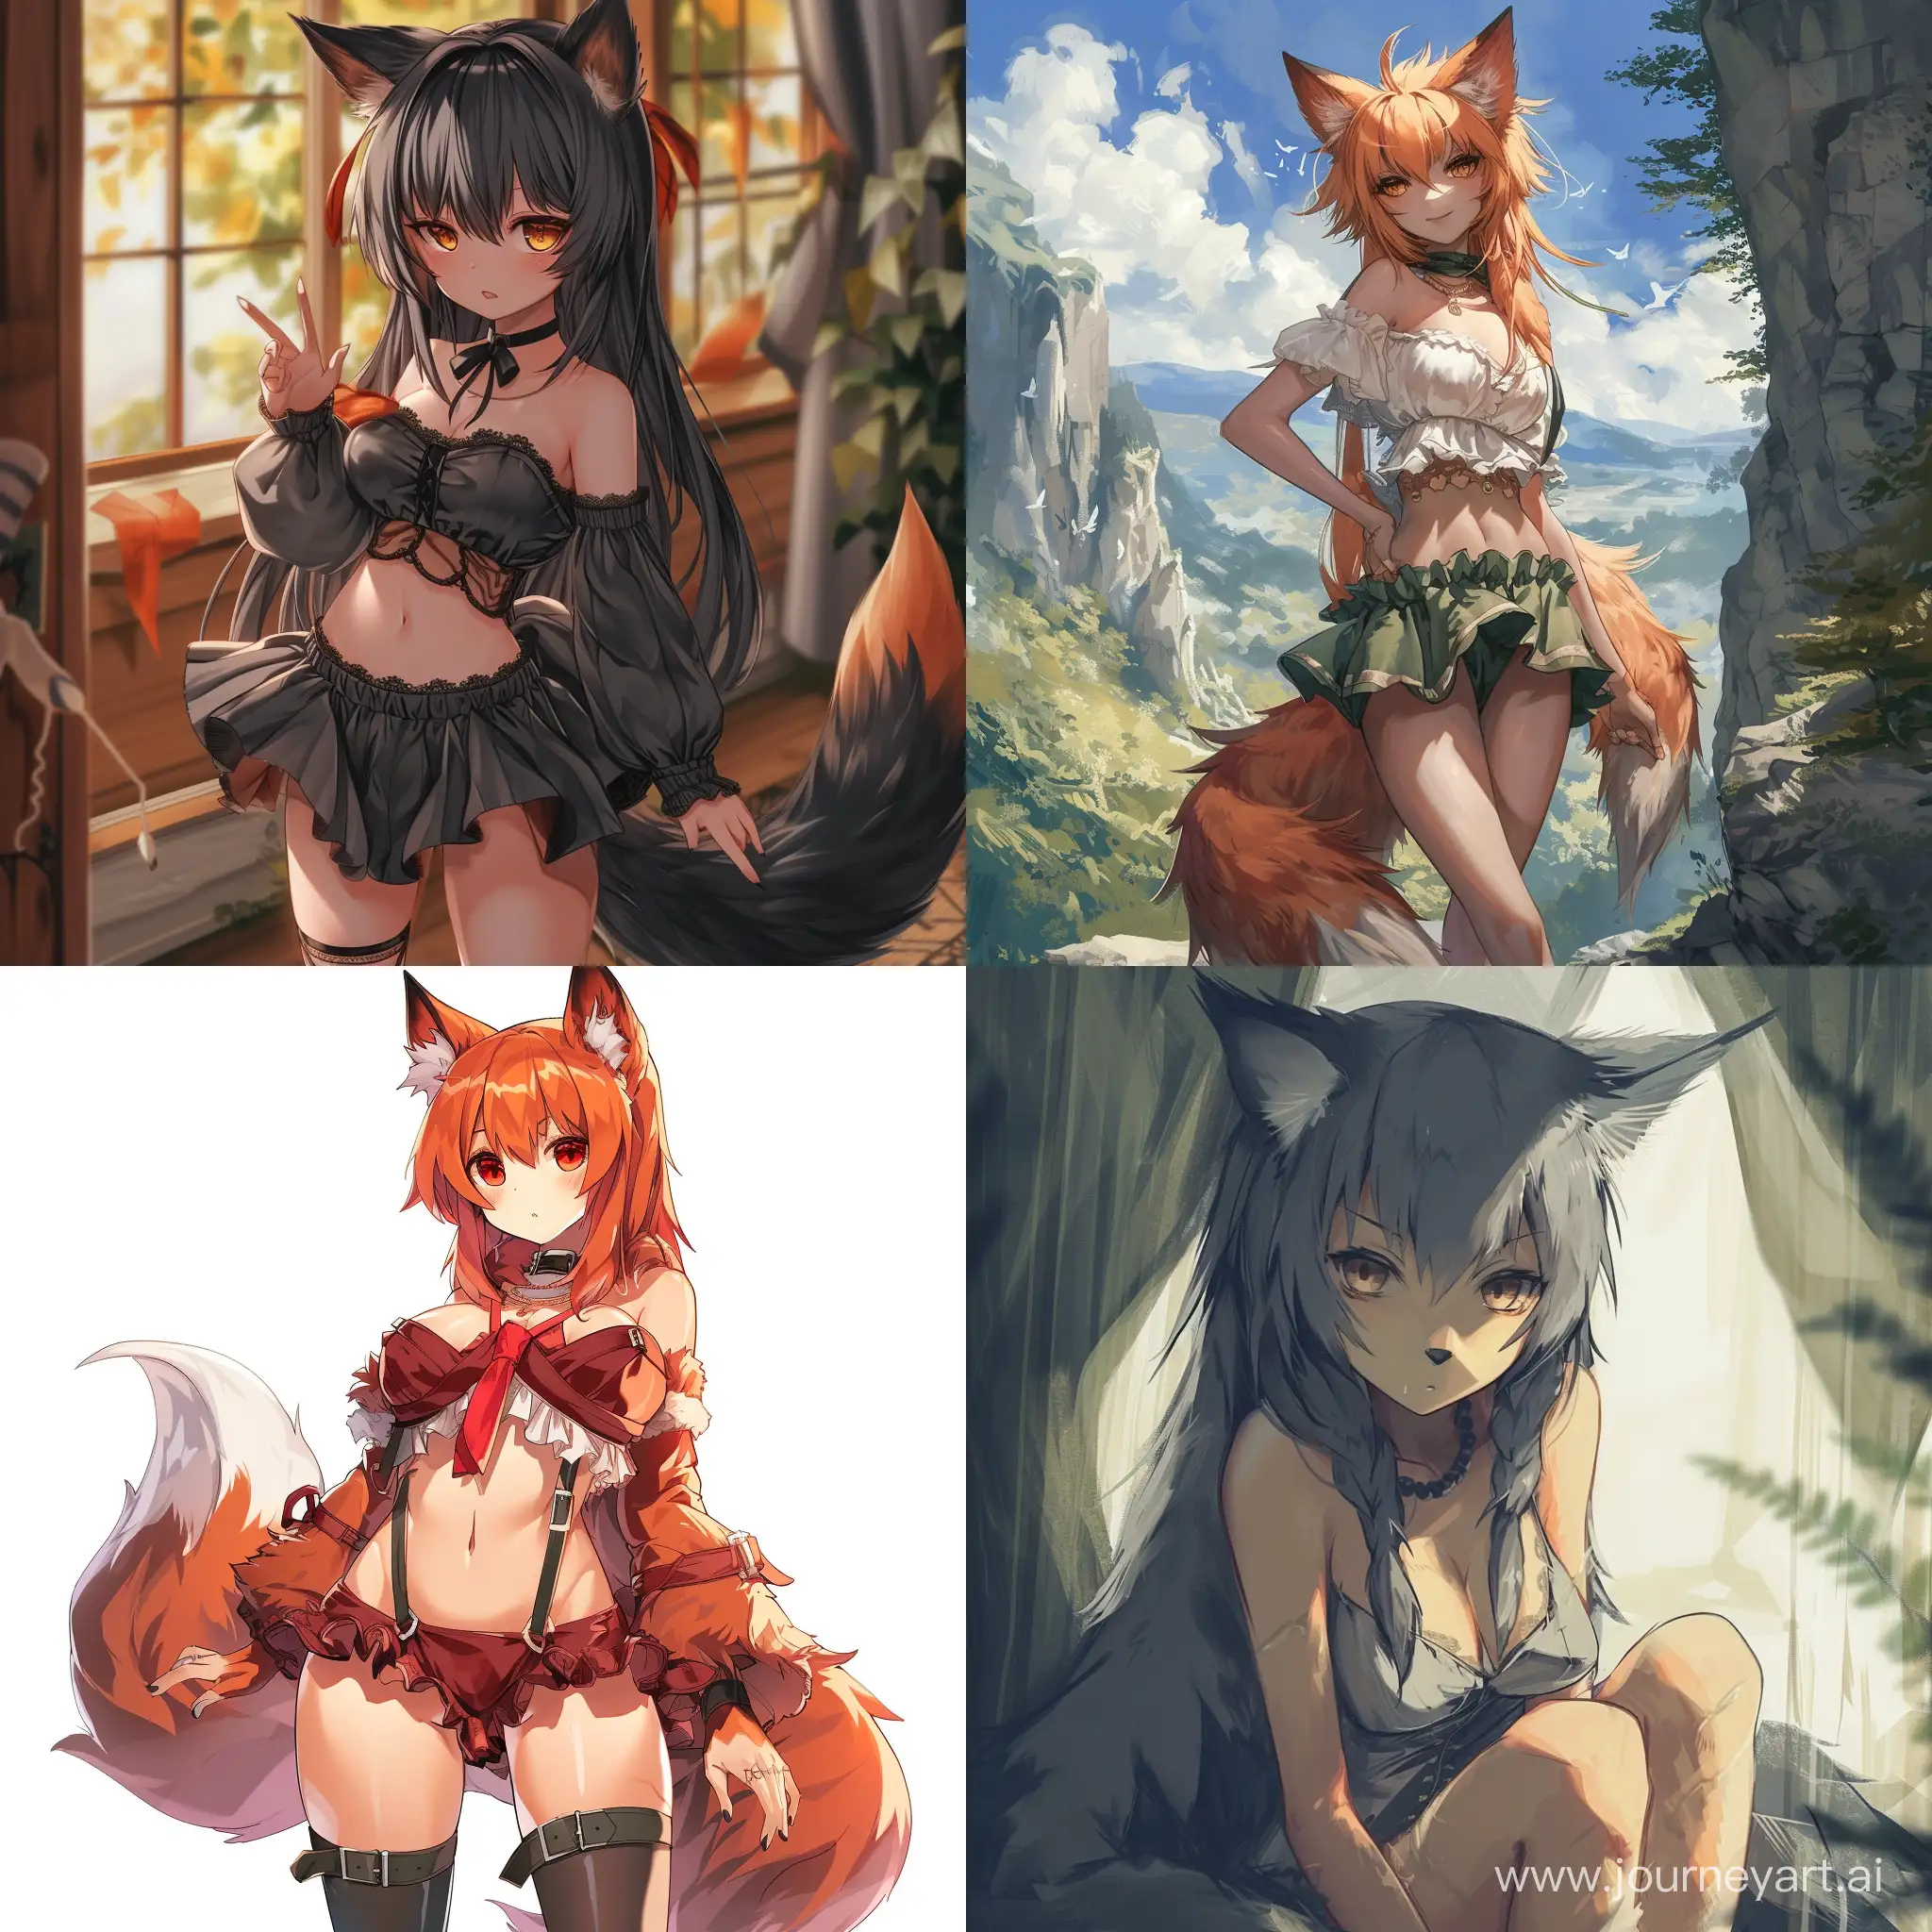 Werewolf-Fox-Girls-with-Elegant-Figures